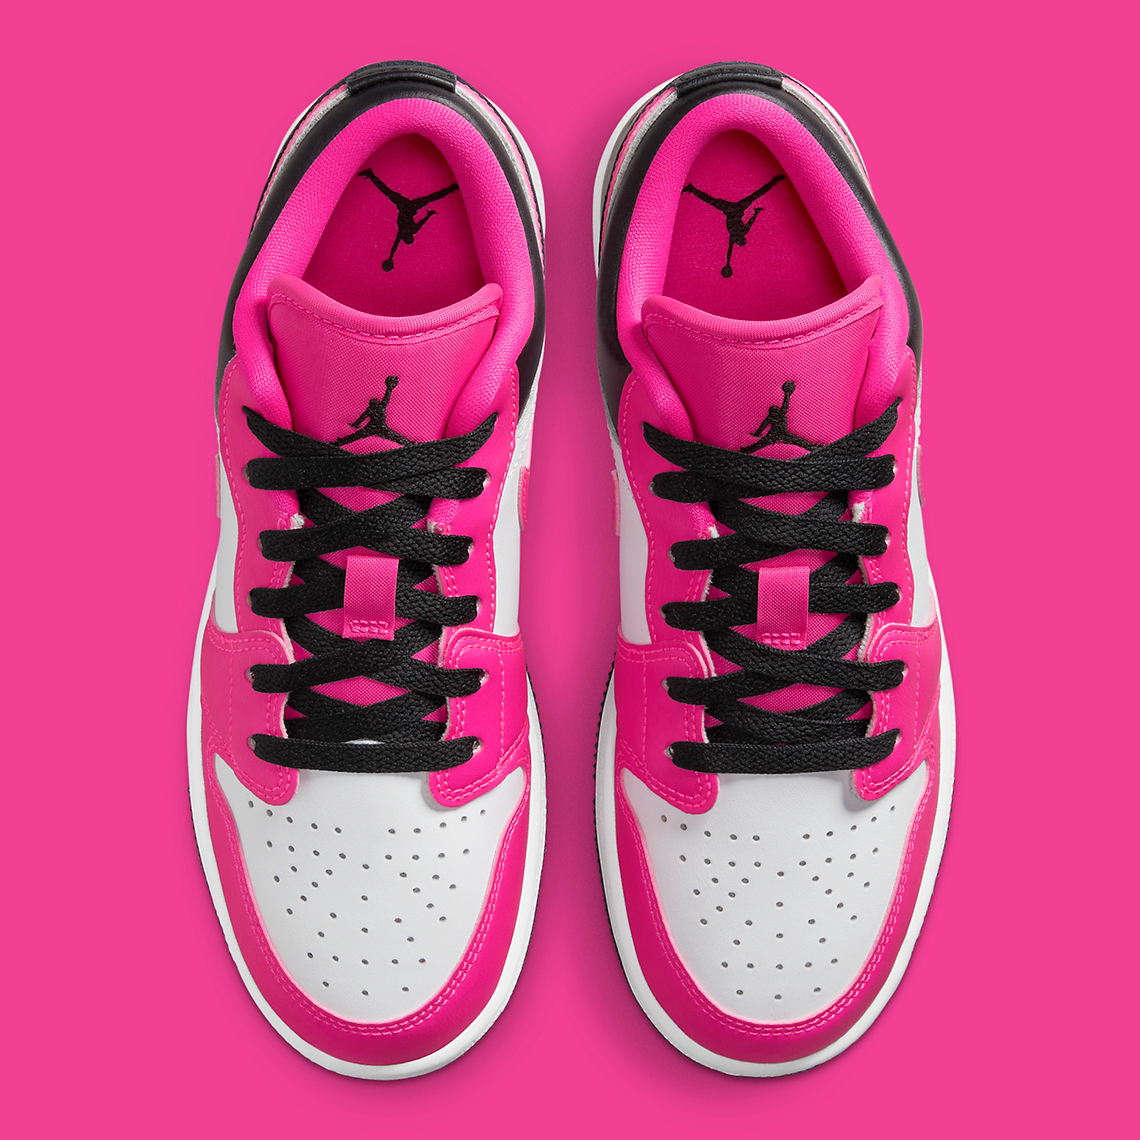 Air jordan 6 infrared шикарные мужские кроссовки джордан черные Low Kids Fierce Pink 3